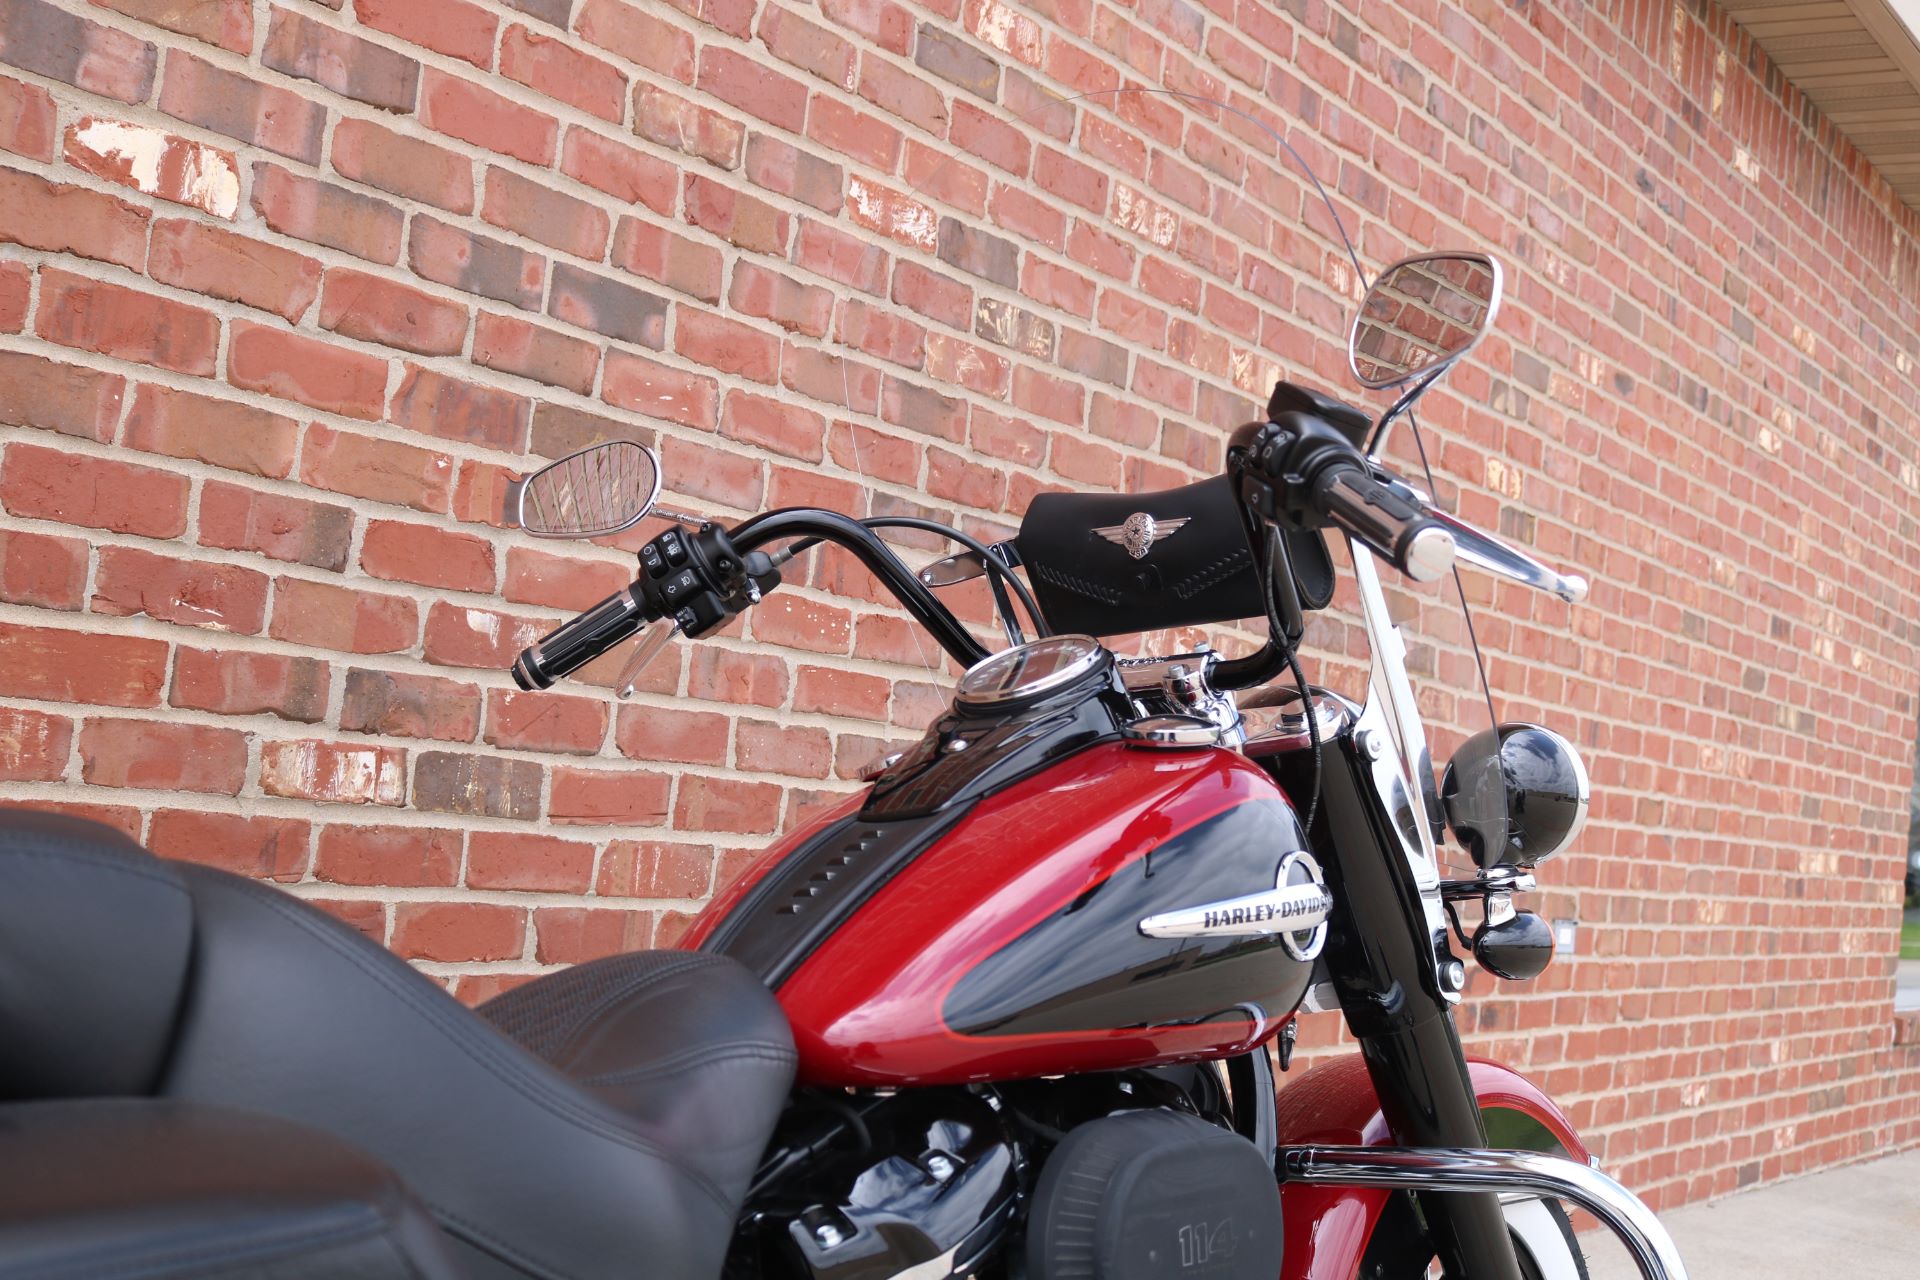 2020 Harley-Davidson Heritage Classic 114 in Ames, Iowa - Photo 5